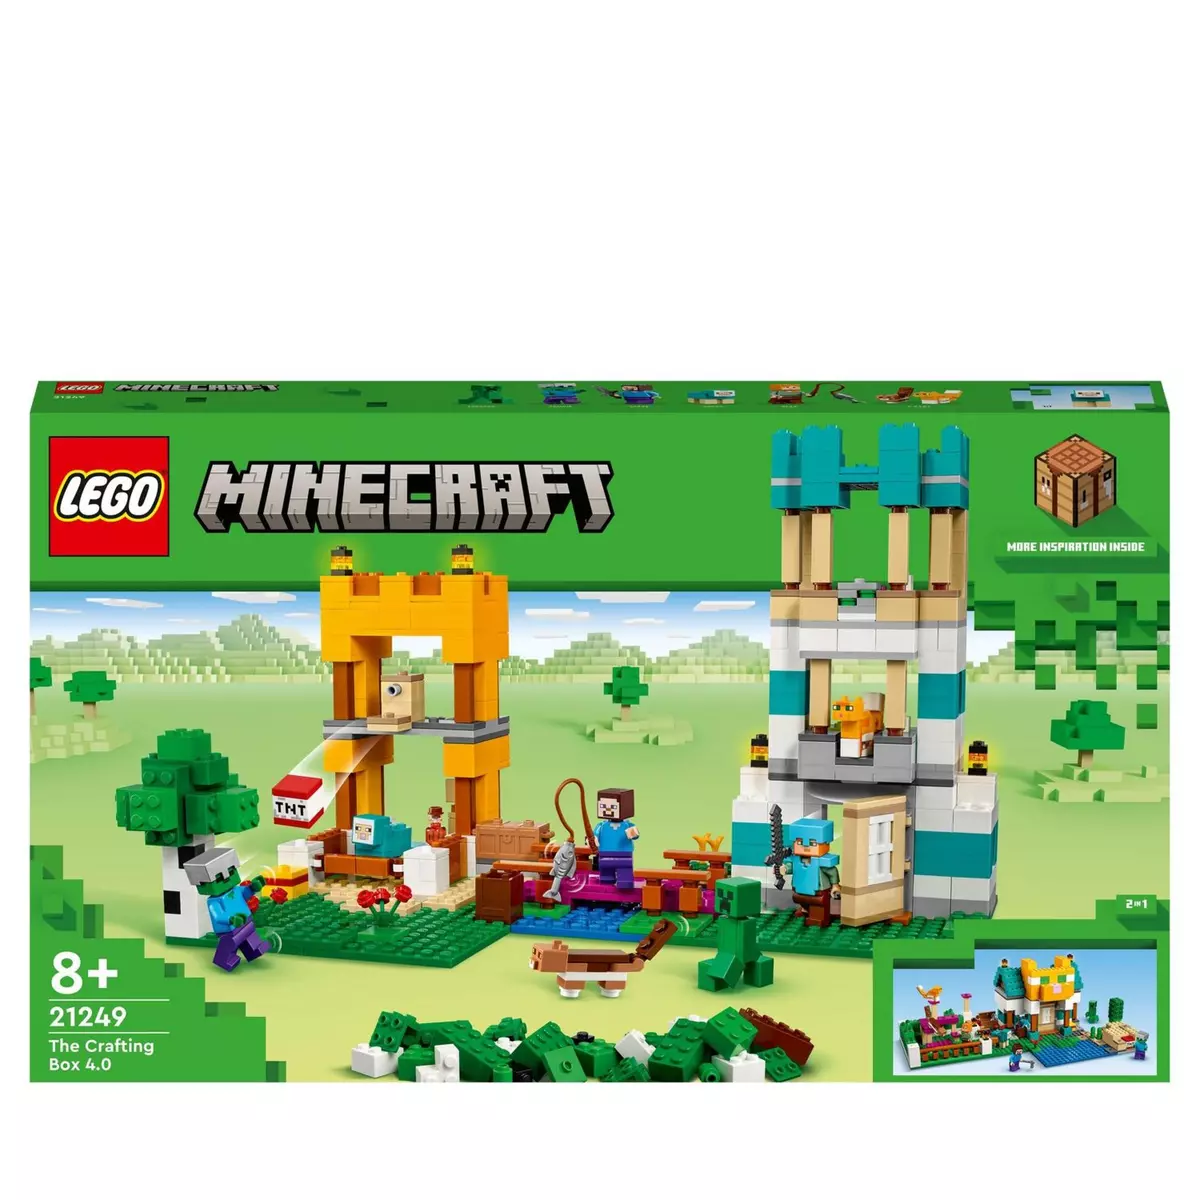 LEGO Minecraft 21166 La Mine Abandonnée, Jouet avec Grotte de